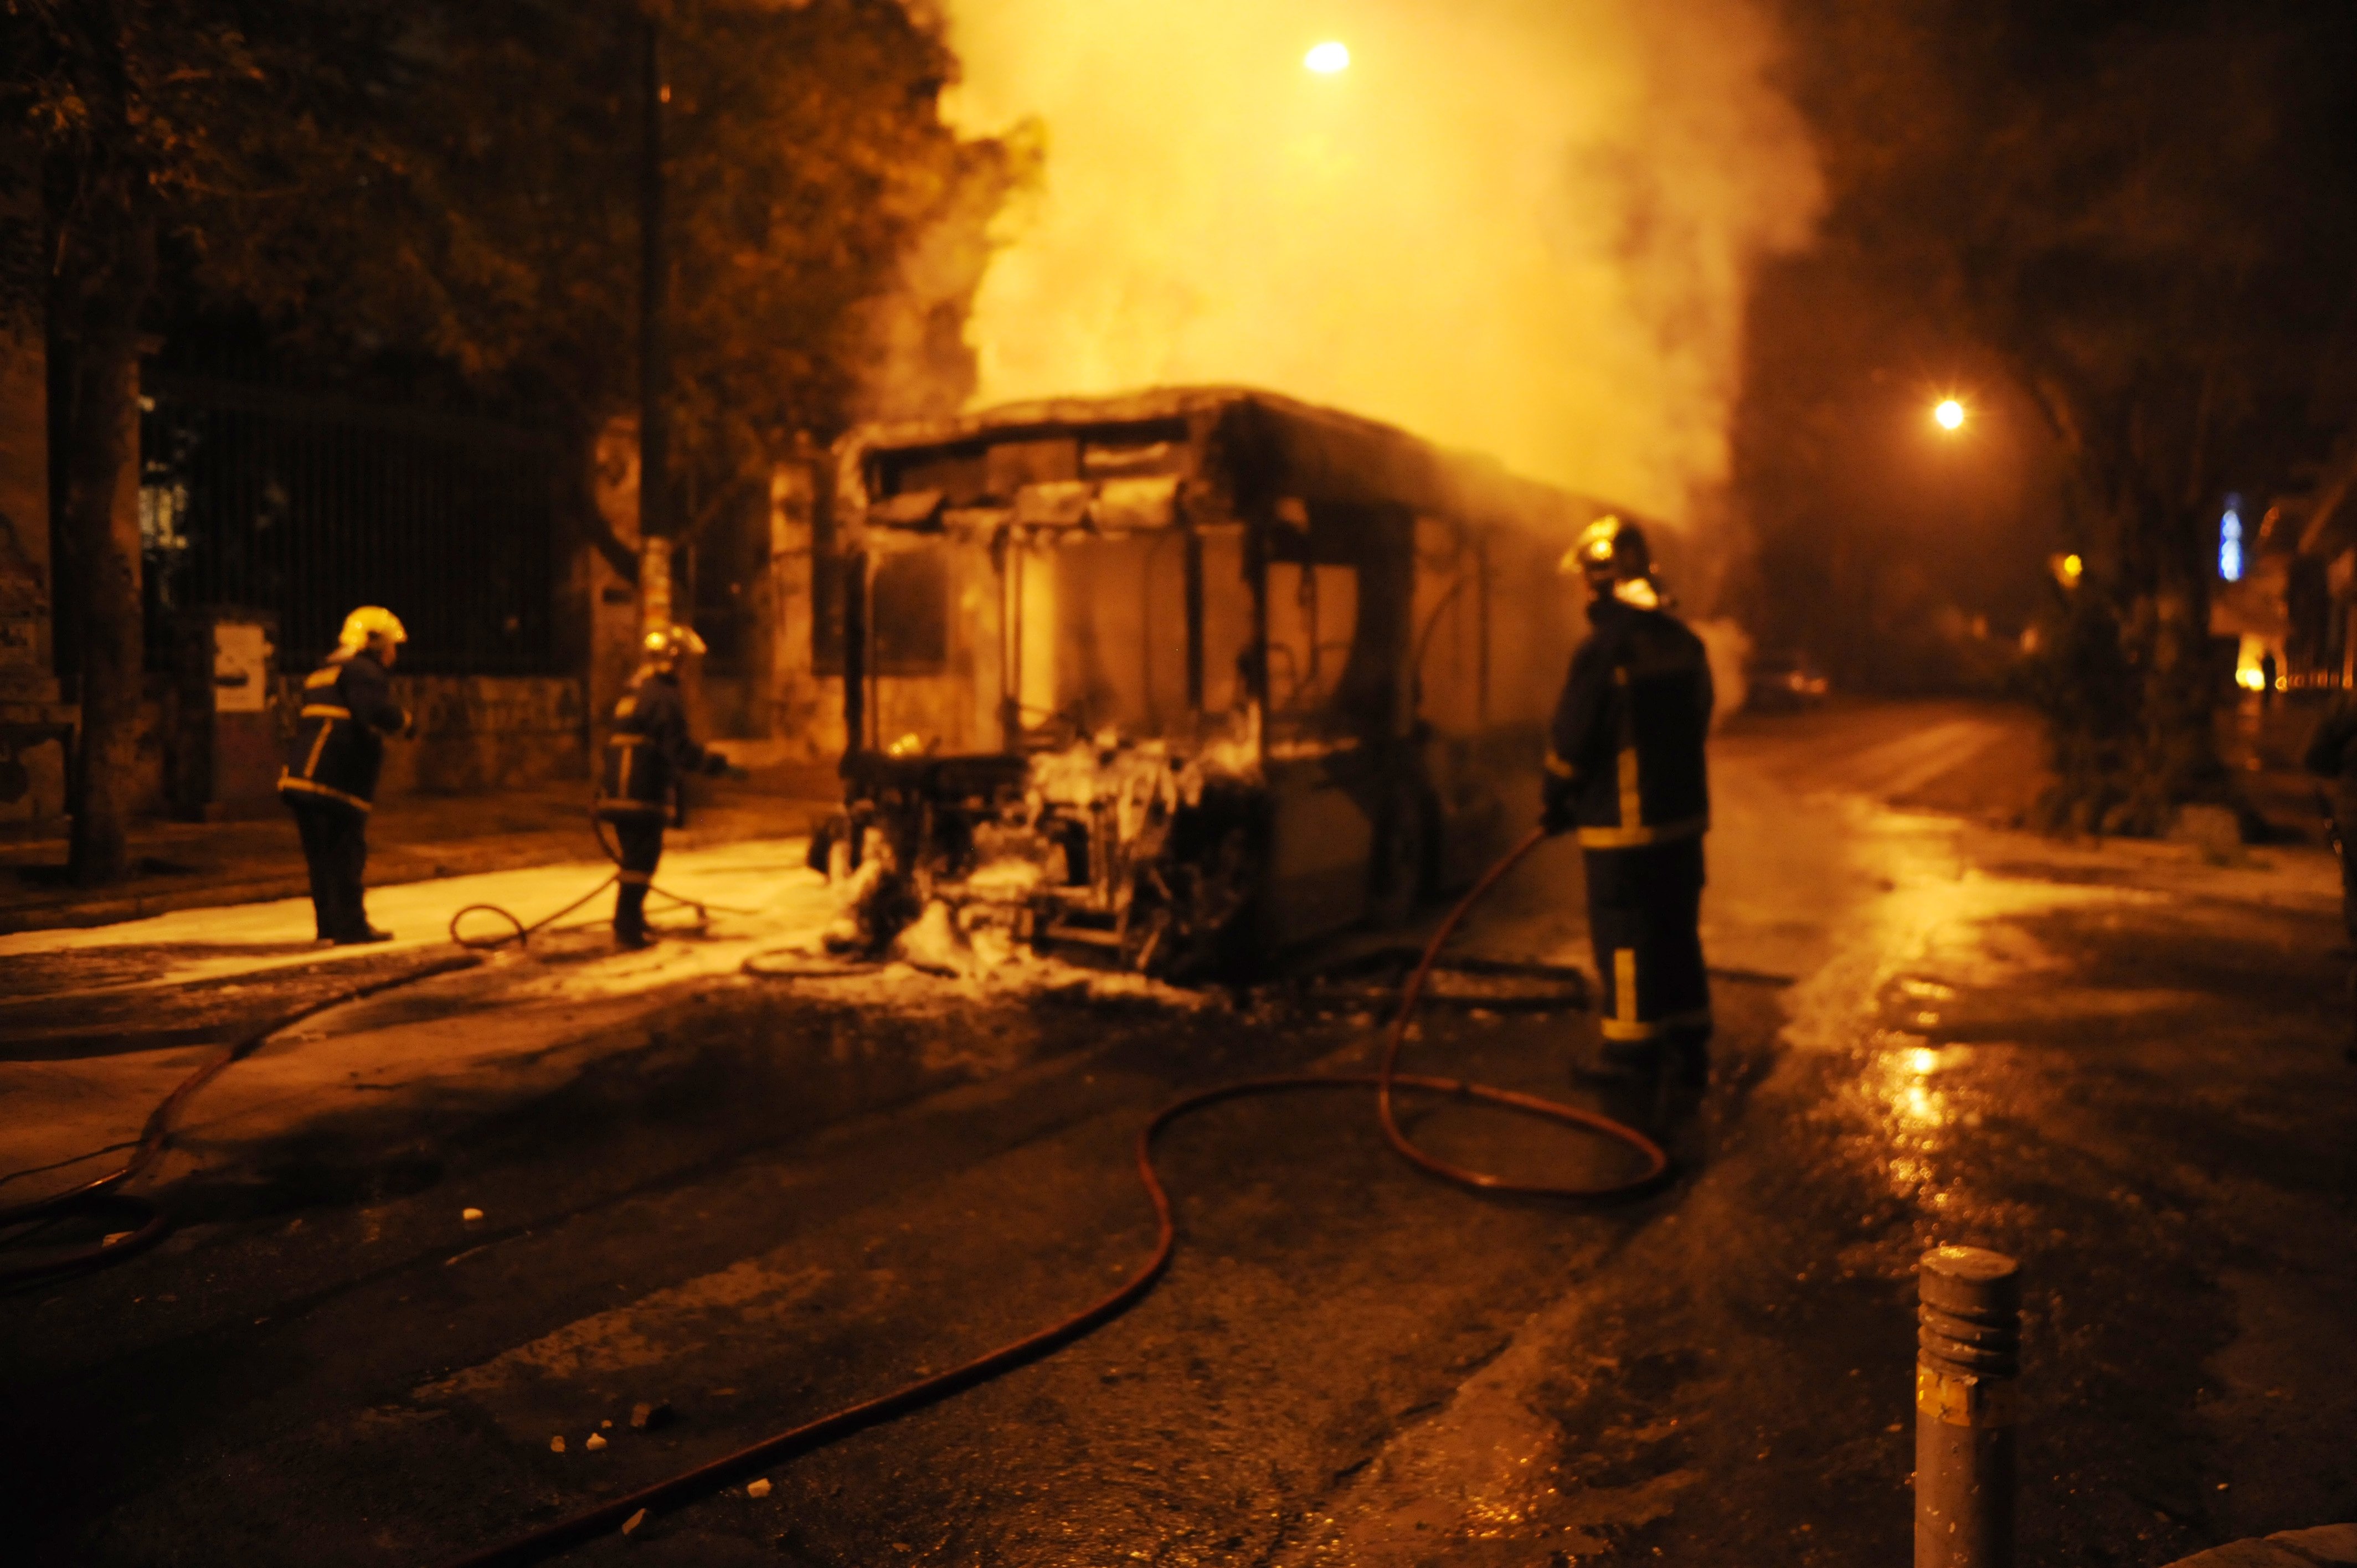 Ένταση τη νύχτα στην Πατησίων: Πυρπόλησαν λεωφορείο και τρόλεϊ